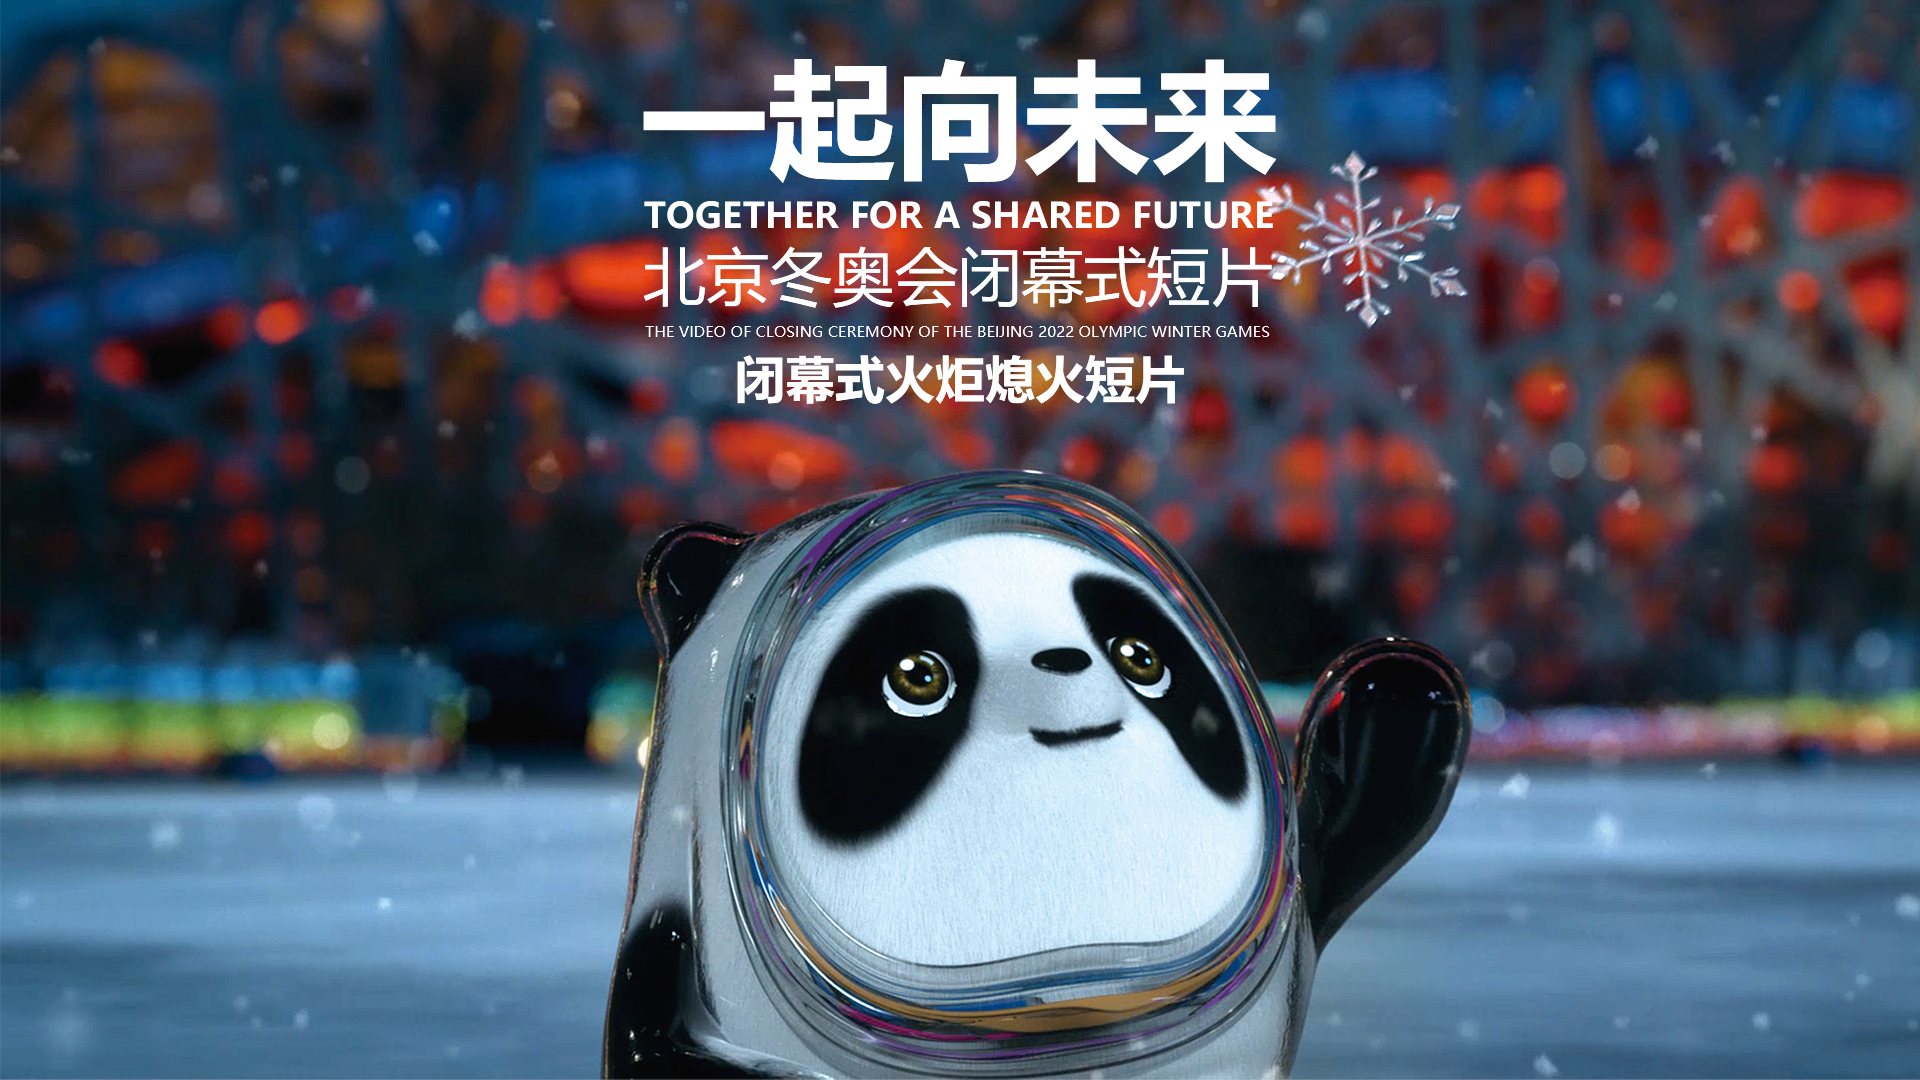 北京冬奥会闭幕式-《再见，一起向未来》